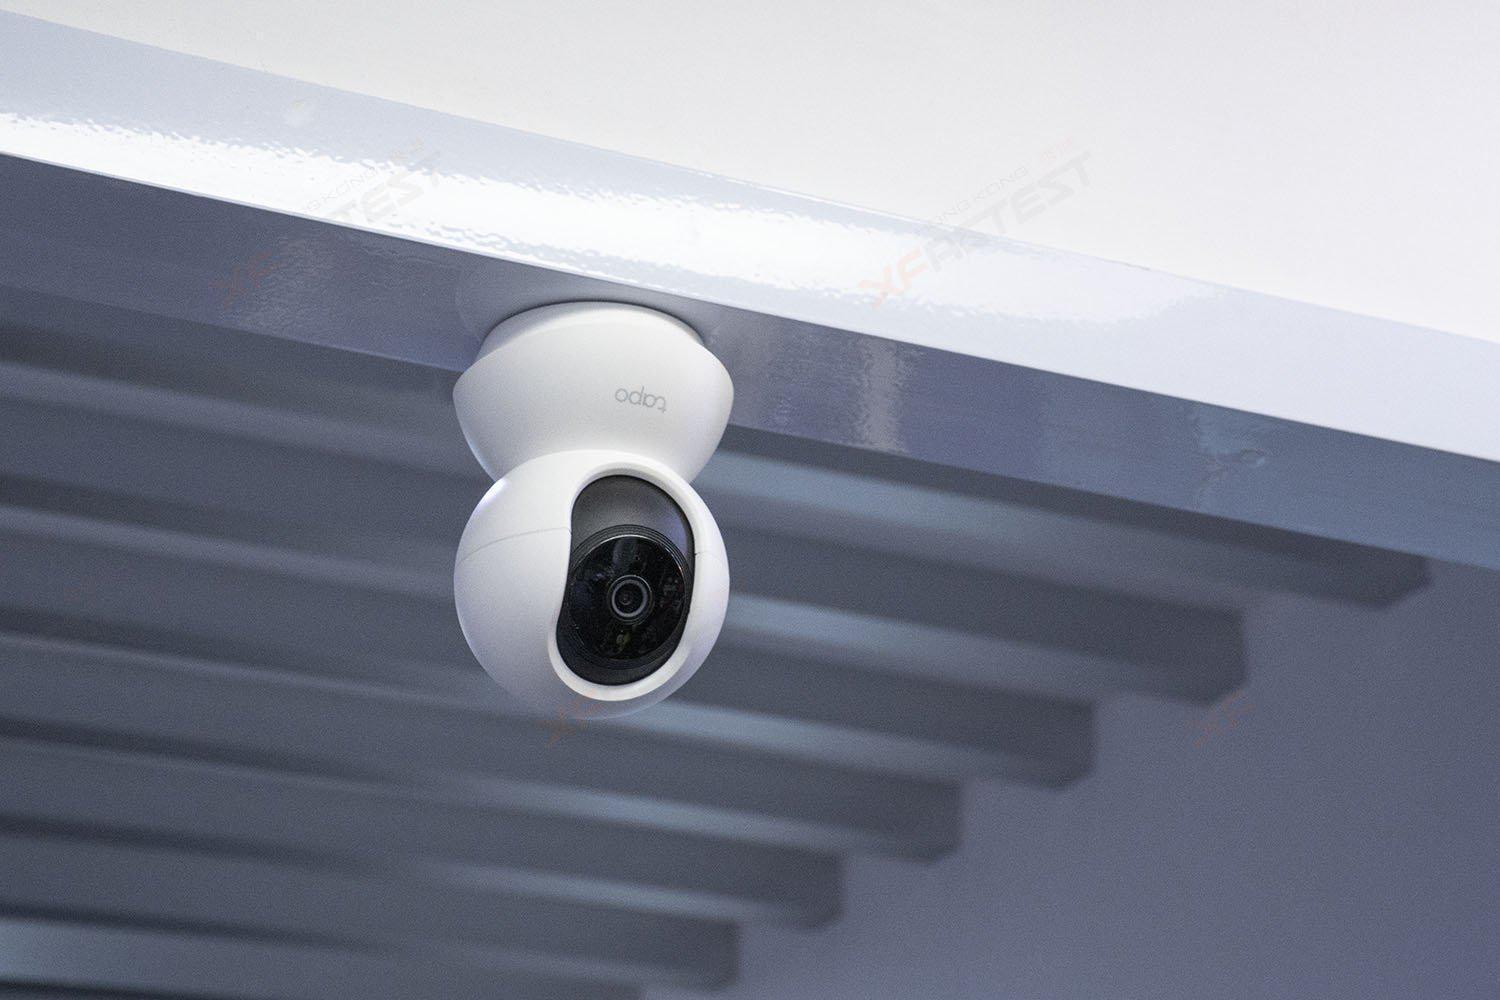 TP-Link Tapo C200 inceleme – Uygun fiyatlı ev güvenlik kamerası